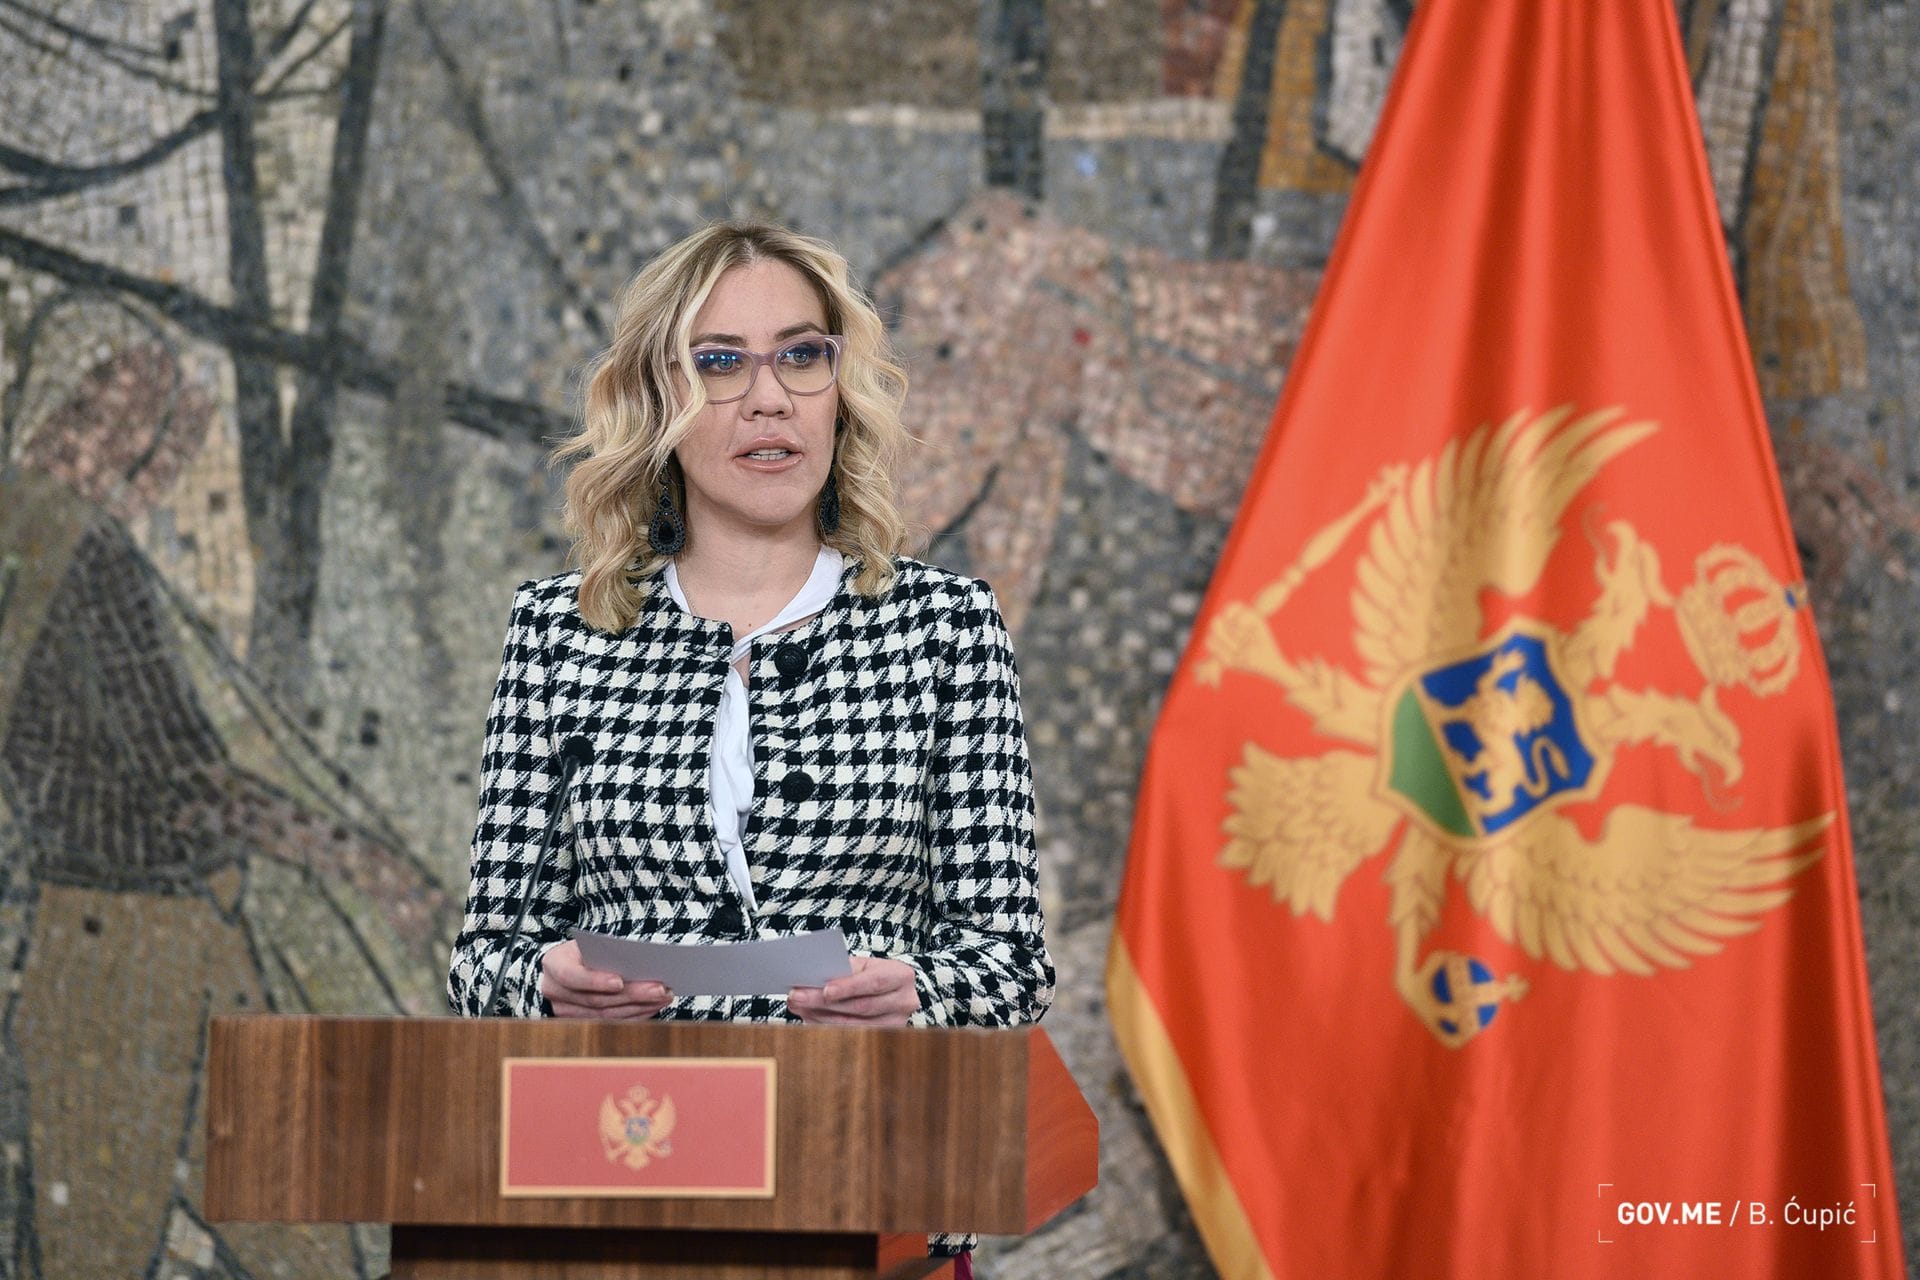 Zbog govora ministarke Bratić, ombudsman poziva političare na odgovornost